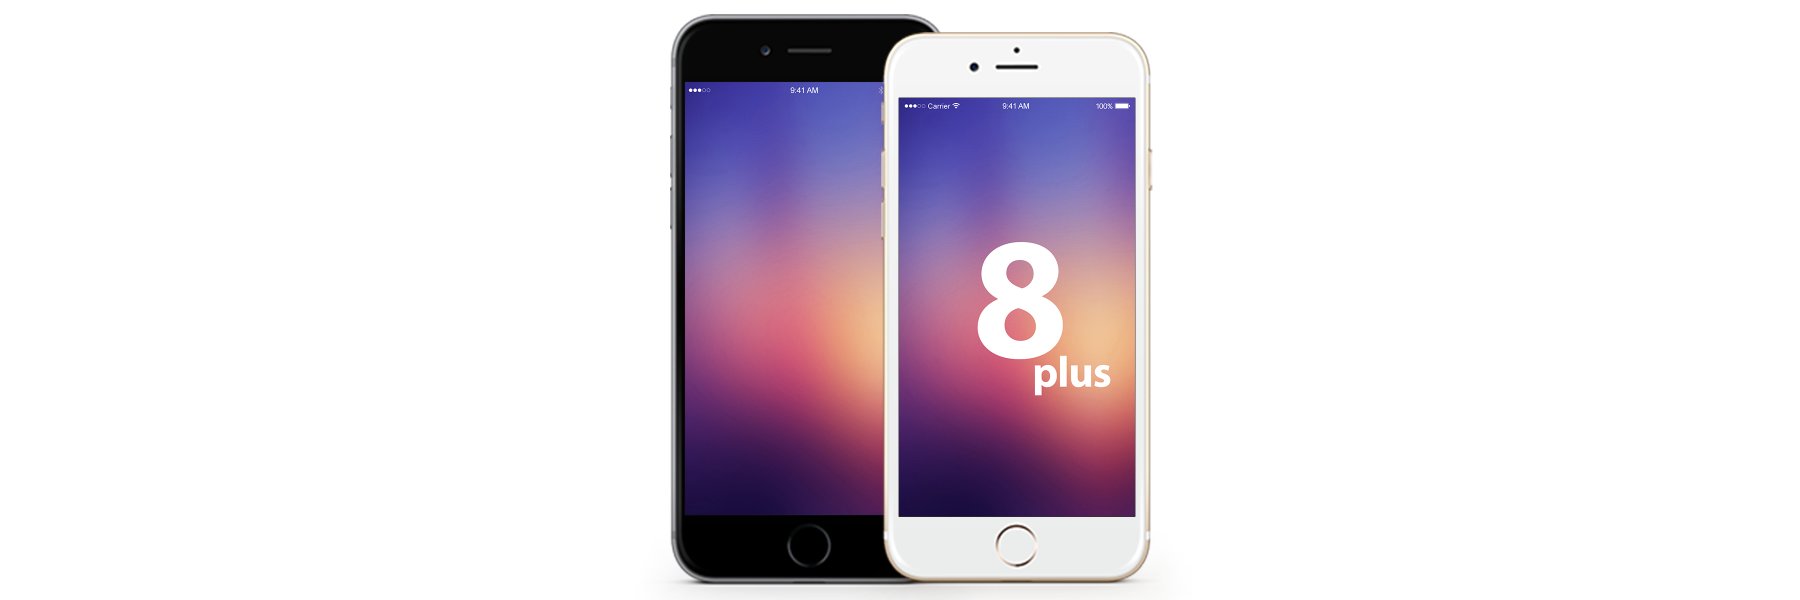 iPhone 8 Plus Displays